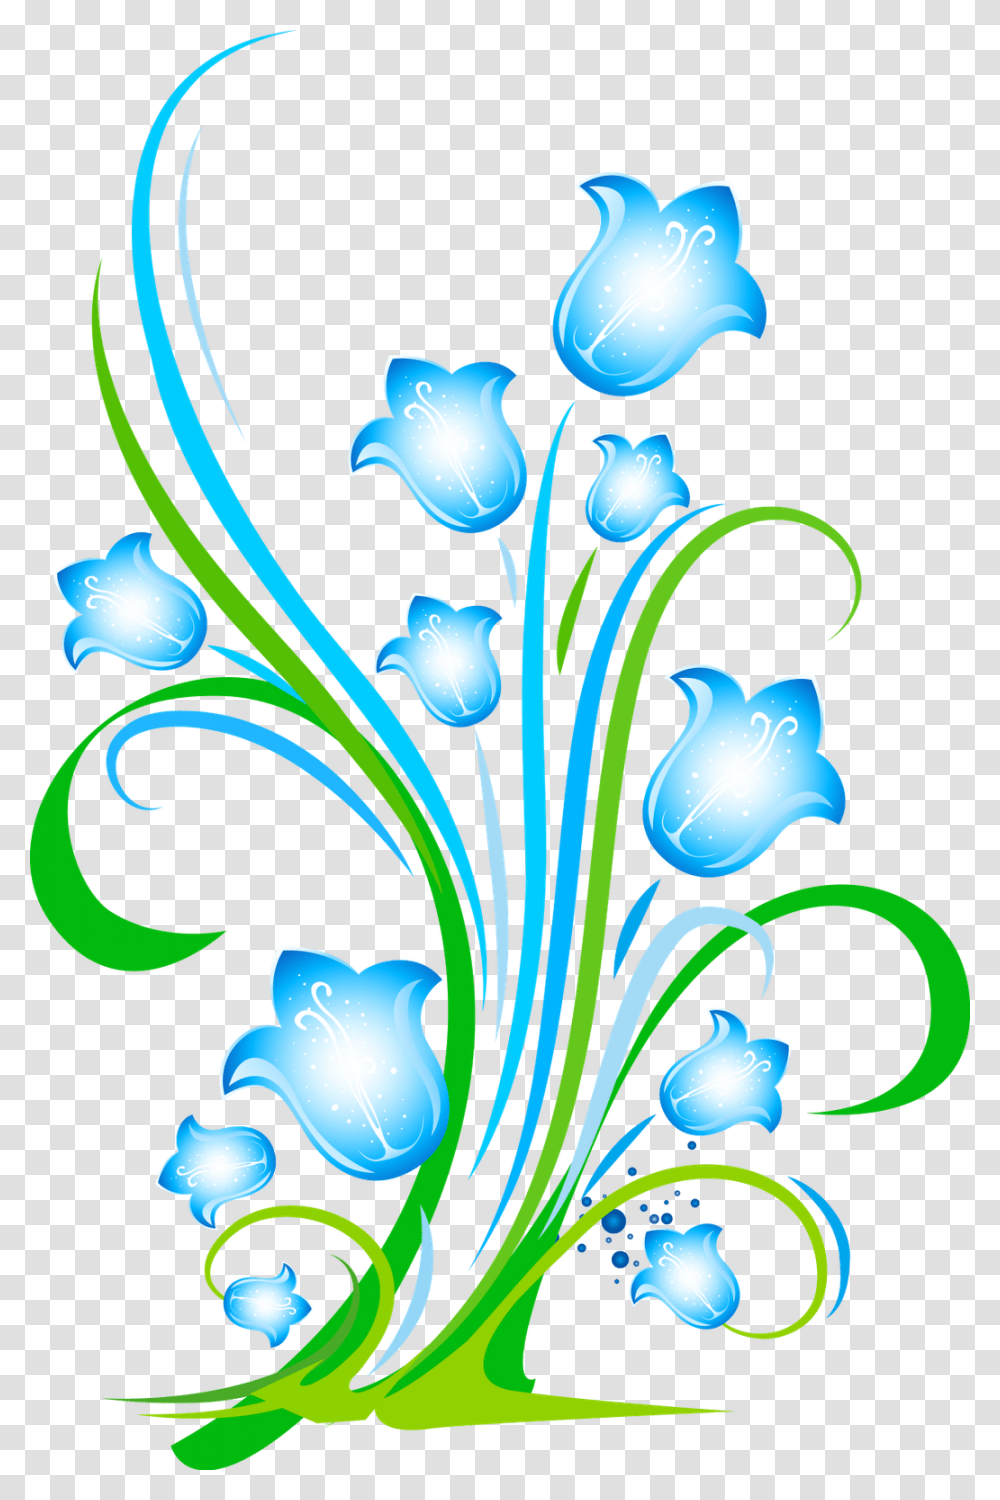 Abstract Flower Design, Floral Design, Pattern Transparent Png